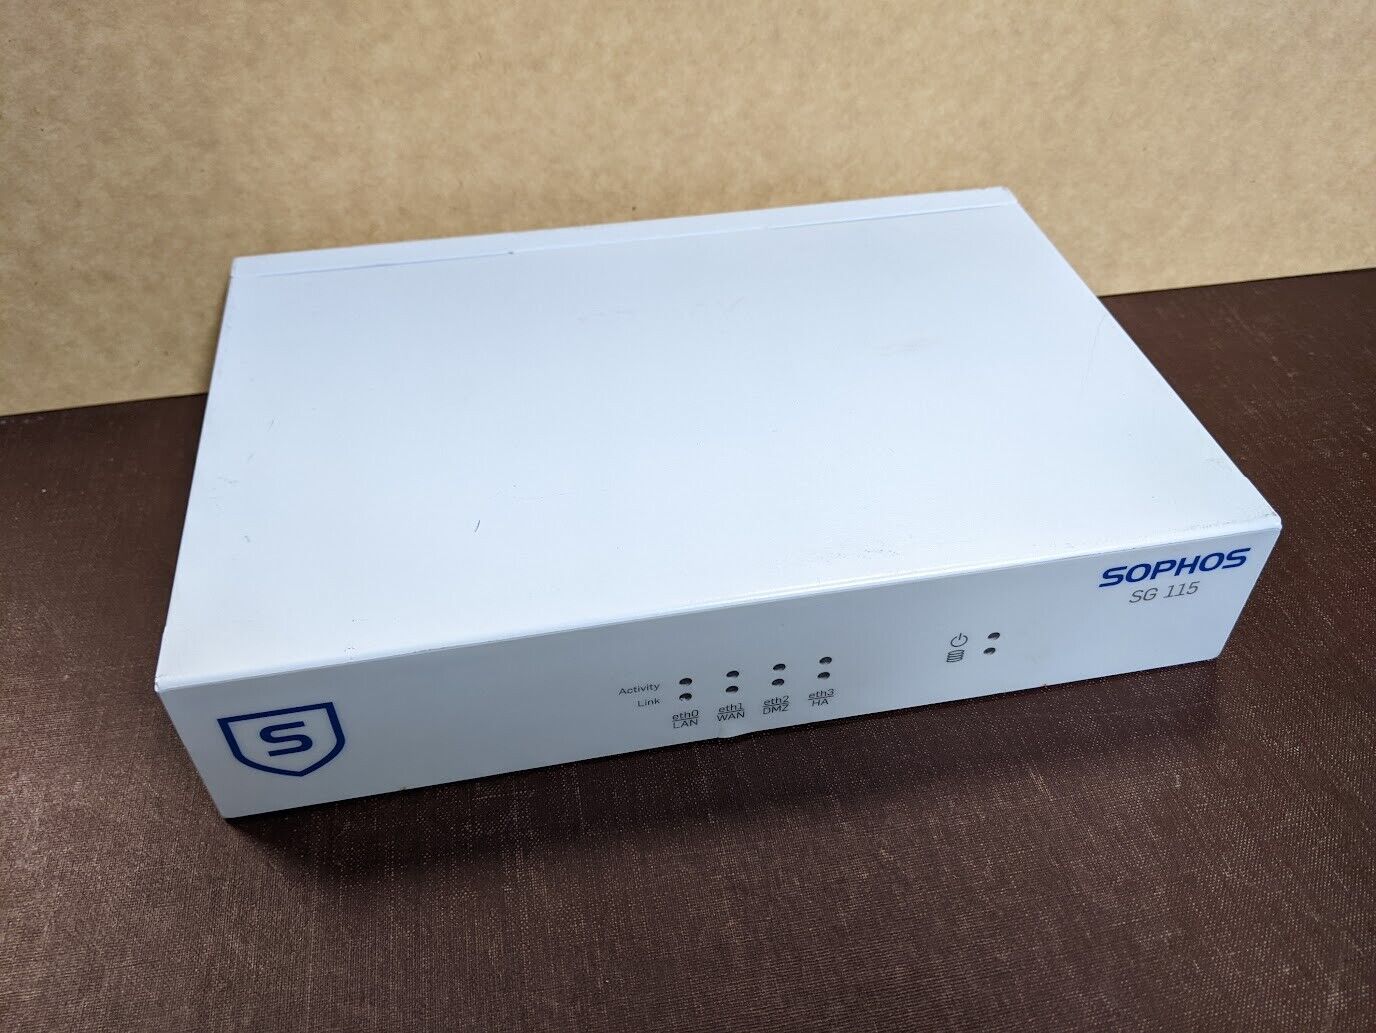 pfSense four-port Gigabit router/firewall on Sophos SG 115 rev 2 hardware